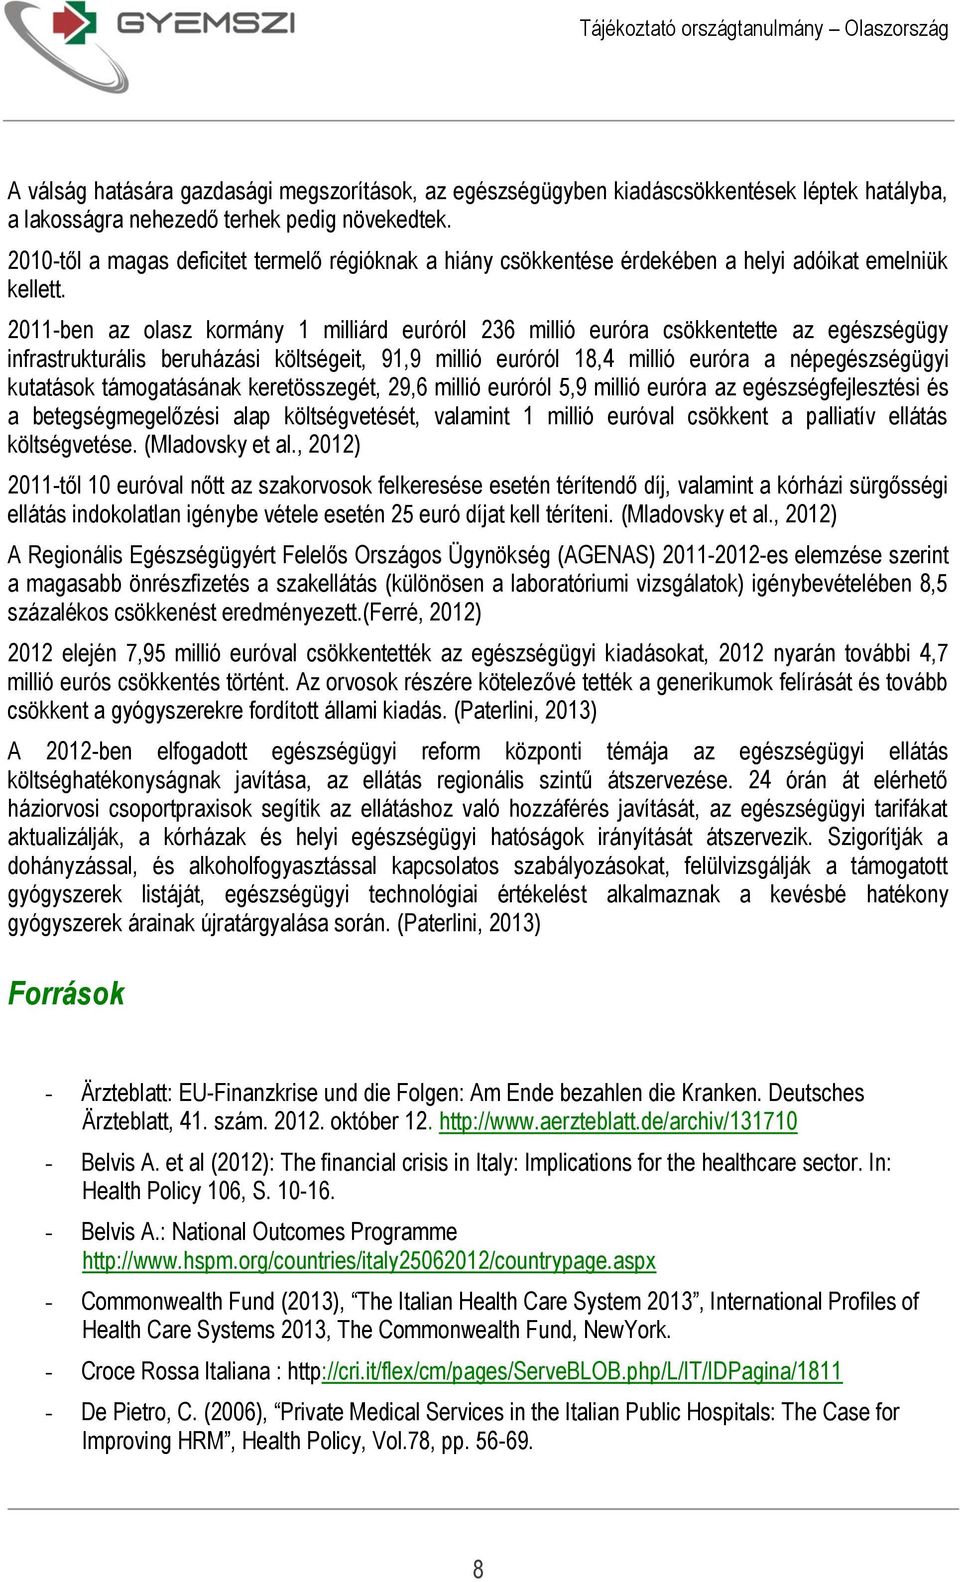 2011-ben az olasz kormány 1 milliárd euróról 236 millió euróra csökkentette az egészségügy infrastrukturális beruházási költségeit, 91,9 millió euróról 18,4 millió euróra a népegészségügyi kutatások